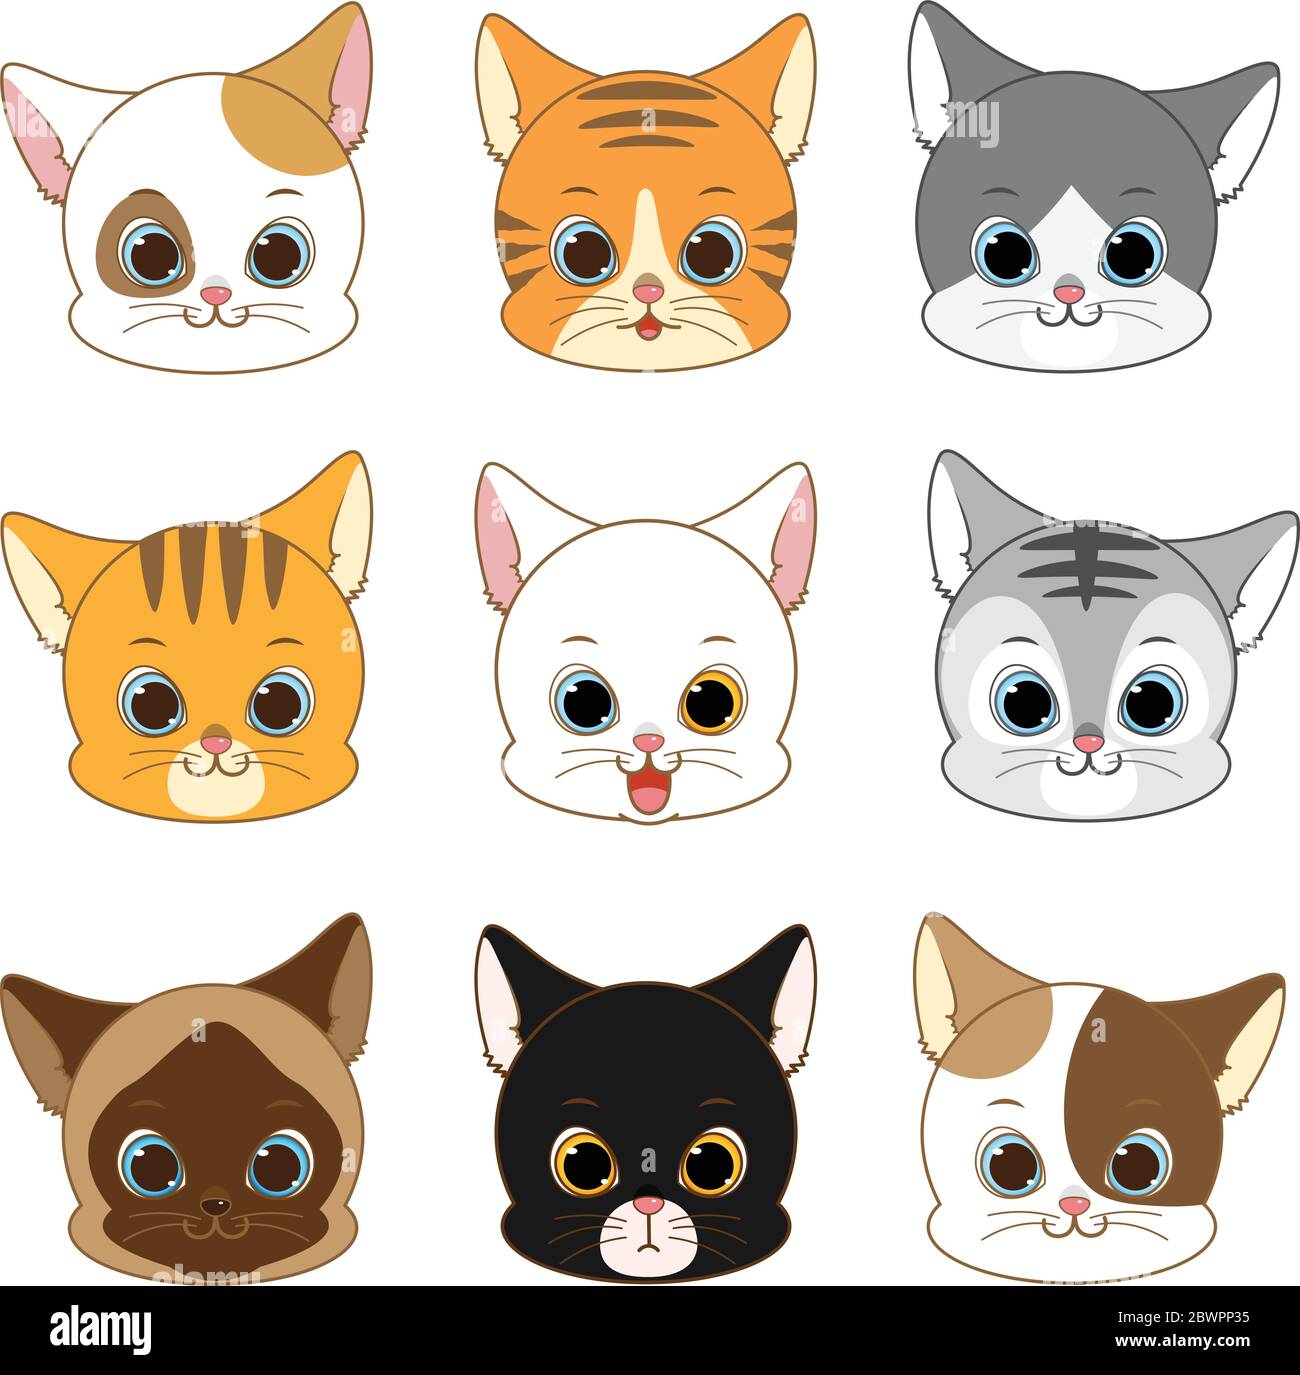 Carino set di Cat Head Collection sorridente, Vector Illustration Illustrazione Vettoriale